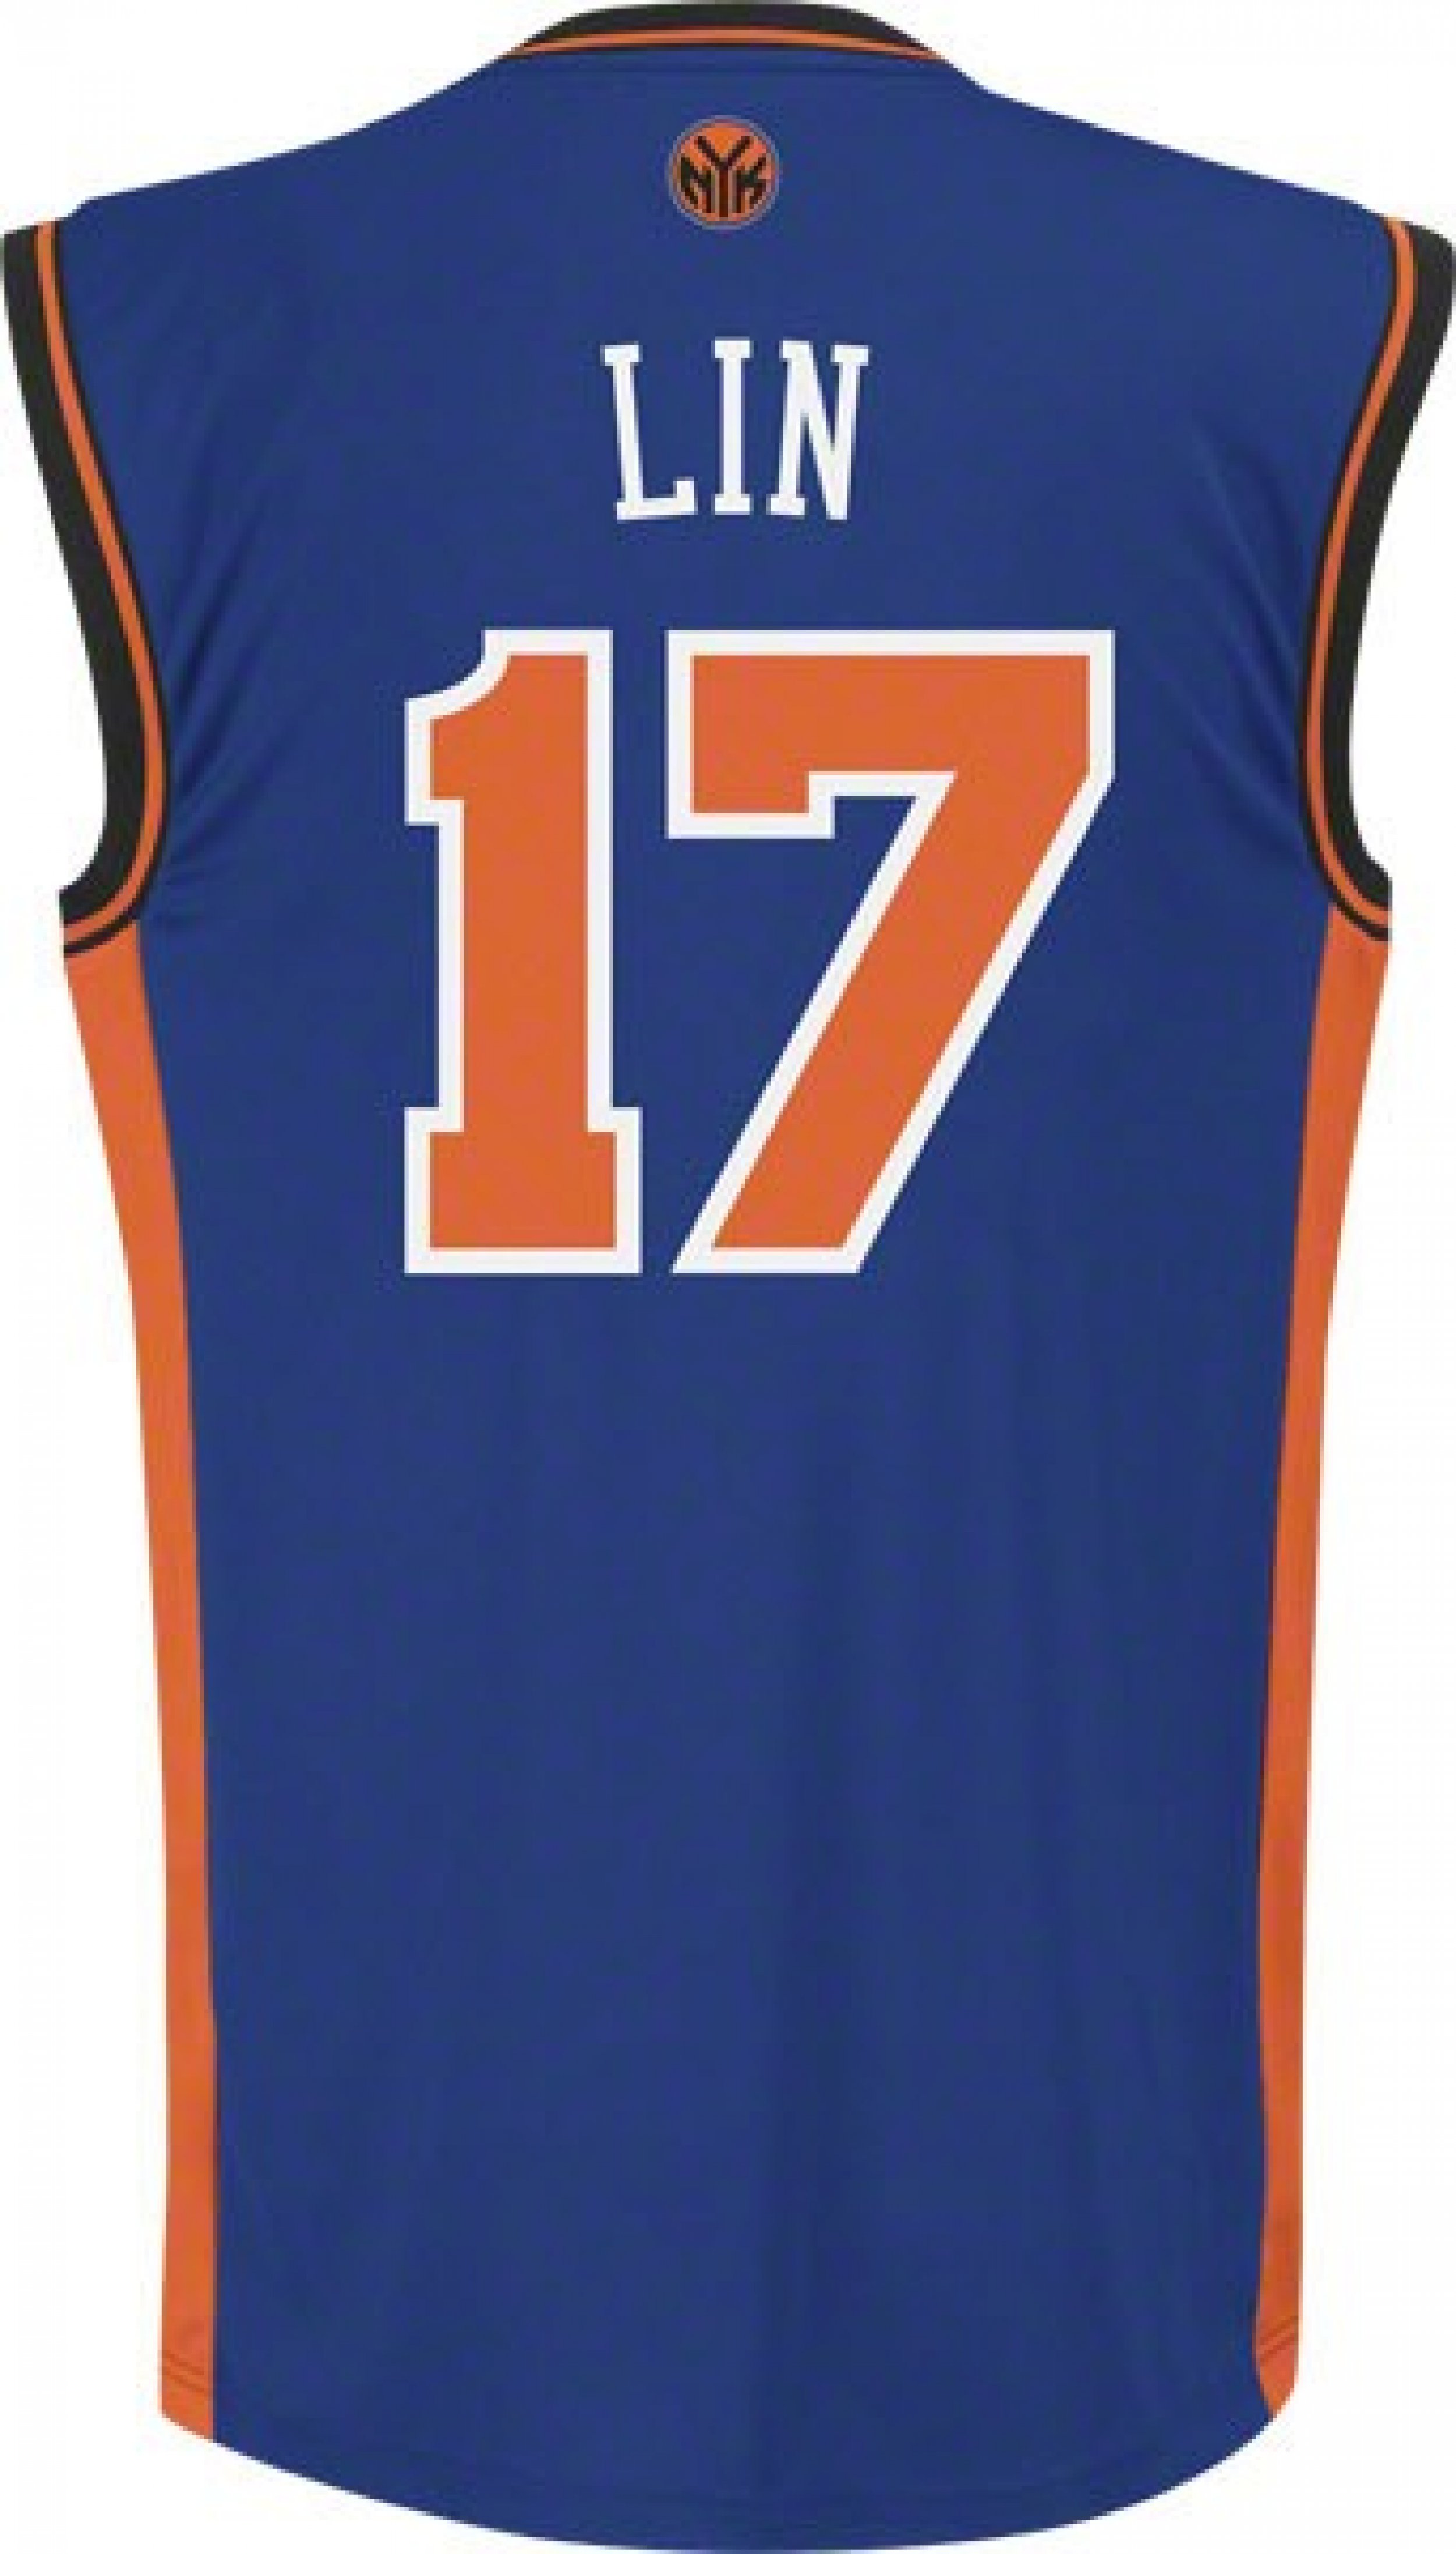 Adidas New York Knicks Jeremy Lin St. Patrick Day Version Jersey